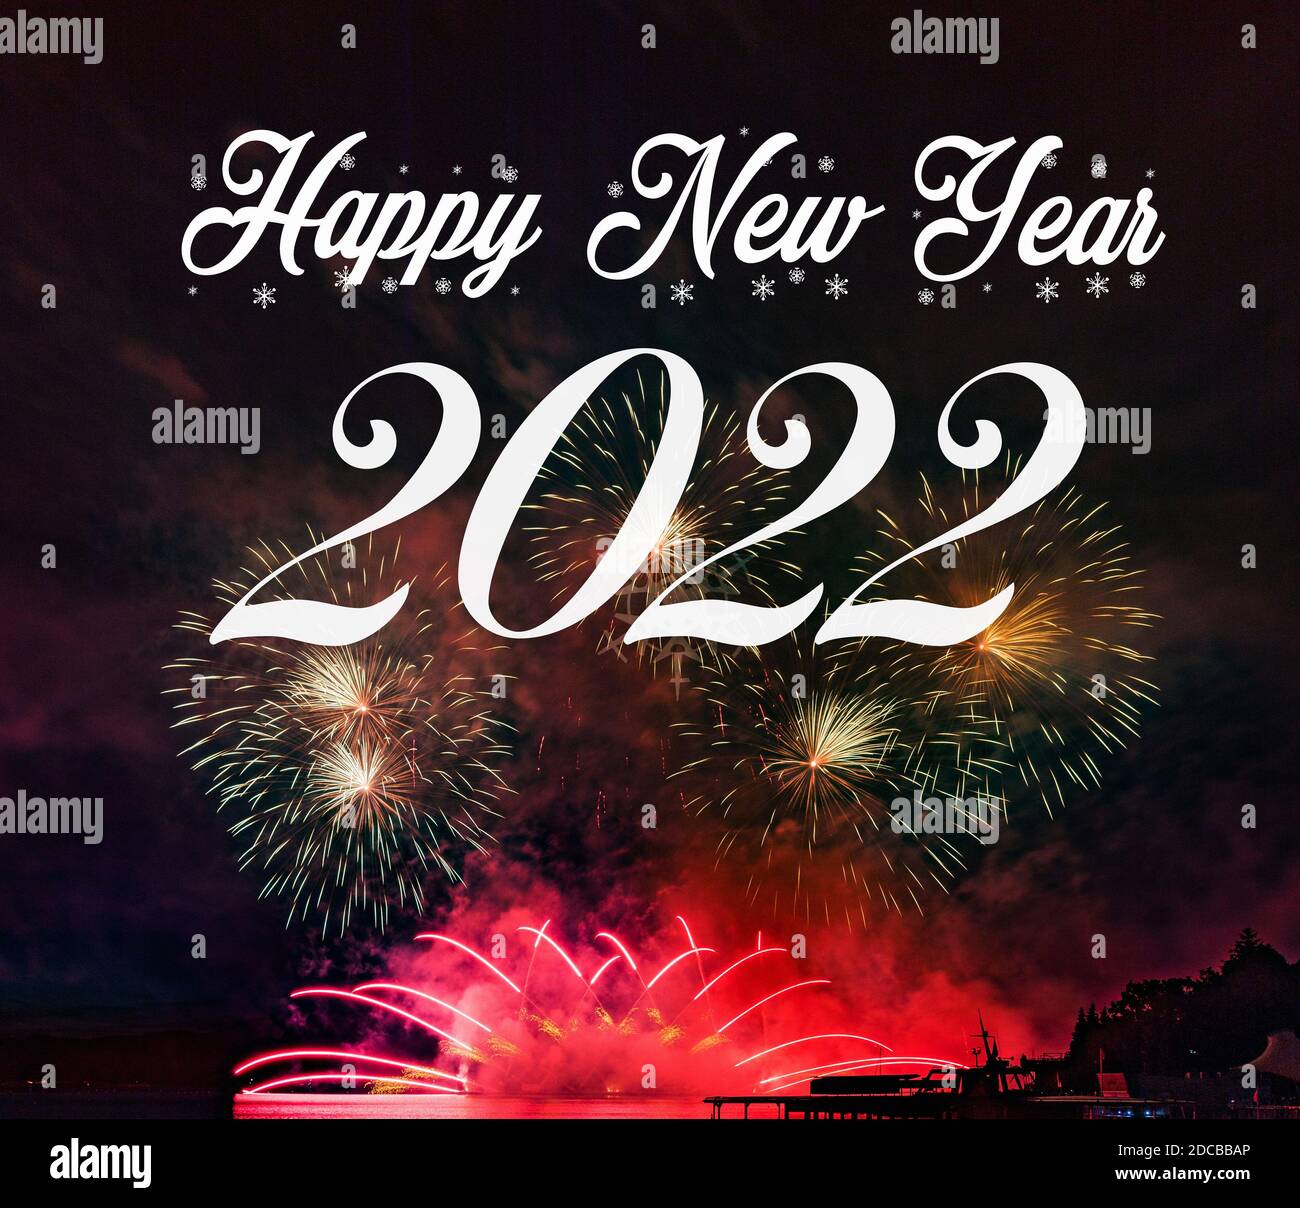 Feliz año nuevo 2022 con fuegos artificiales de fondo. Celebración del Año Nuevo 2022. Foto de stock